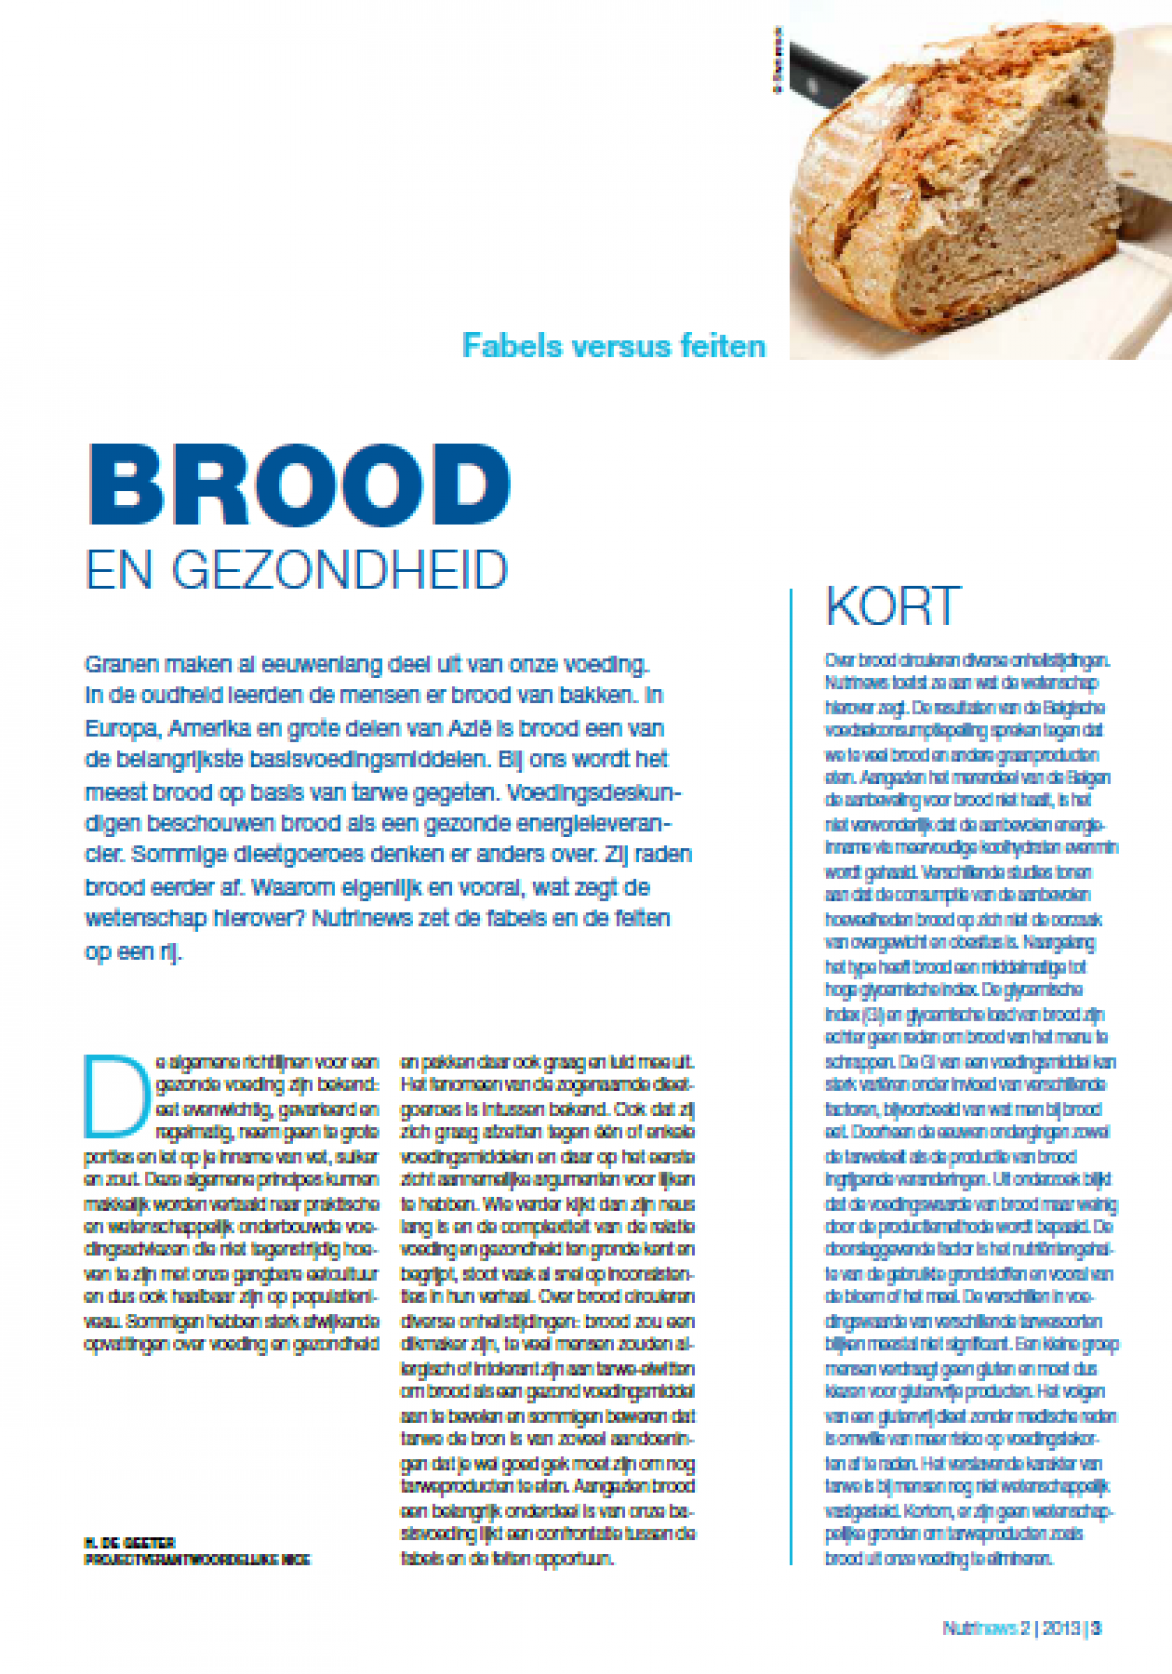 Cover_Brood&gezondheid - Feiten versus feiten_2013-02